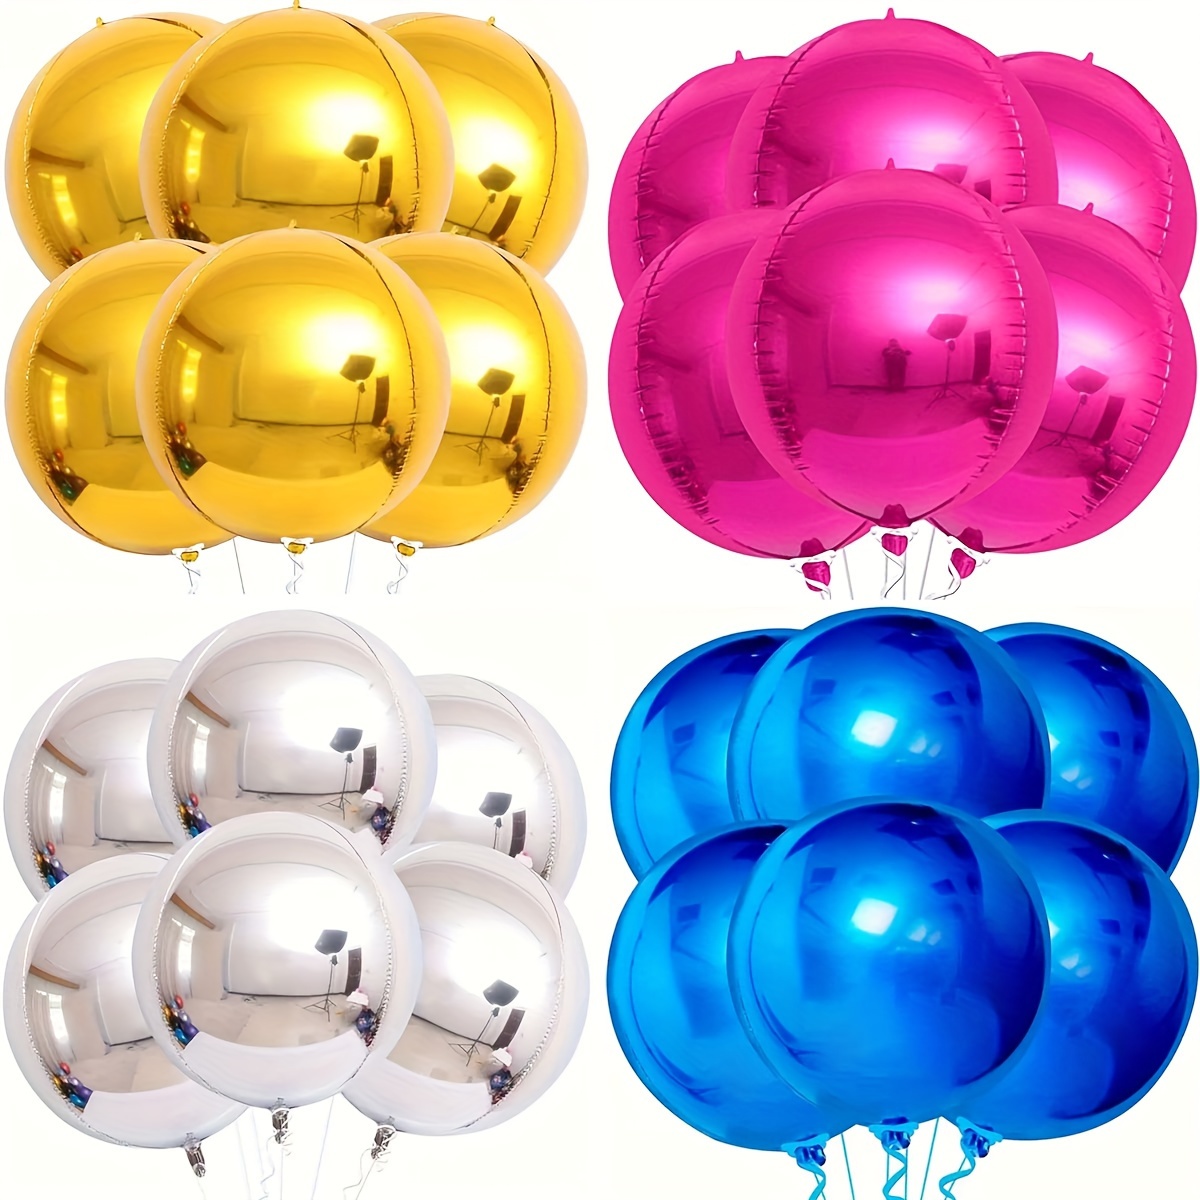 20 globos de colores surtidos en forma de corazón de 10 pulgadas, 10 tipos  de globos de aluminio de fiesta arcoíris para decoración de fiestas